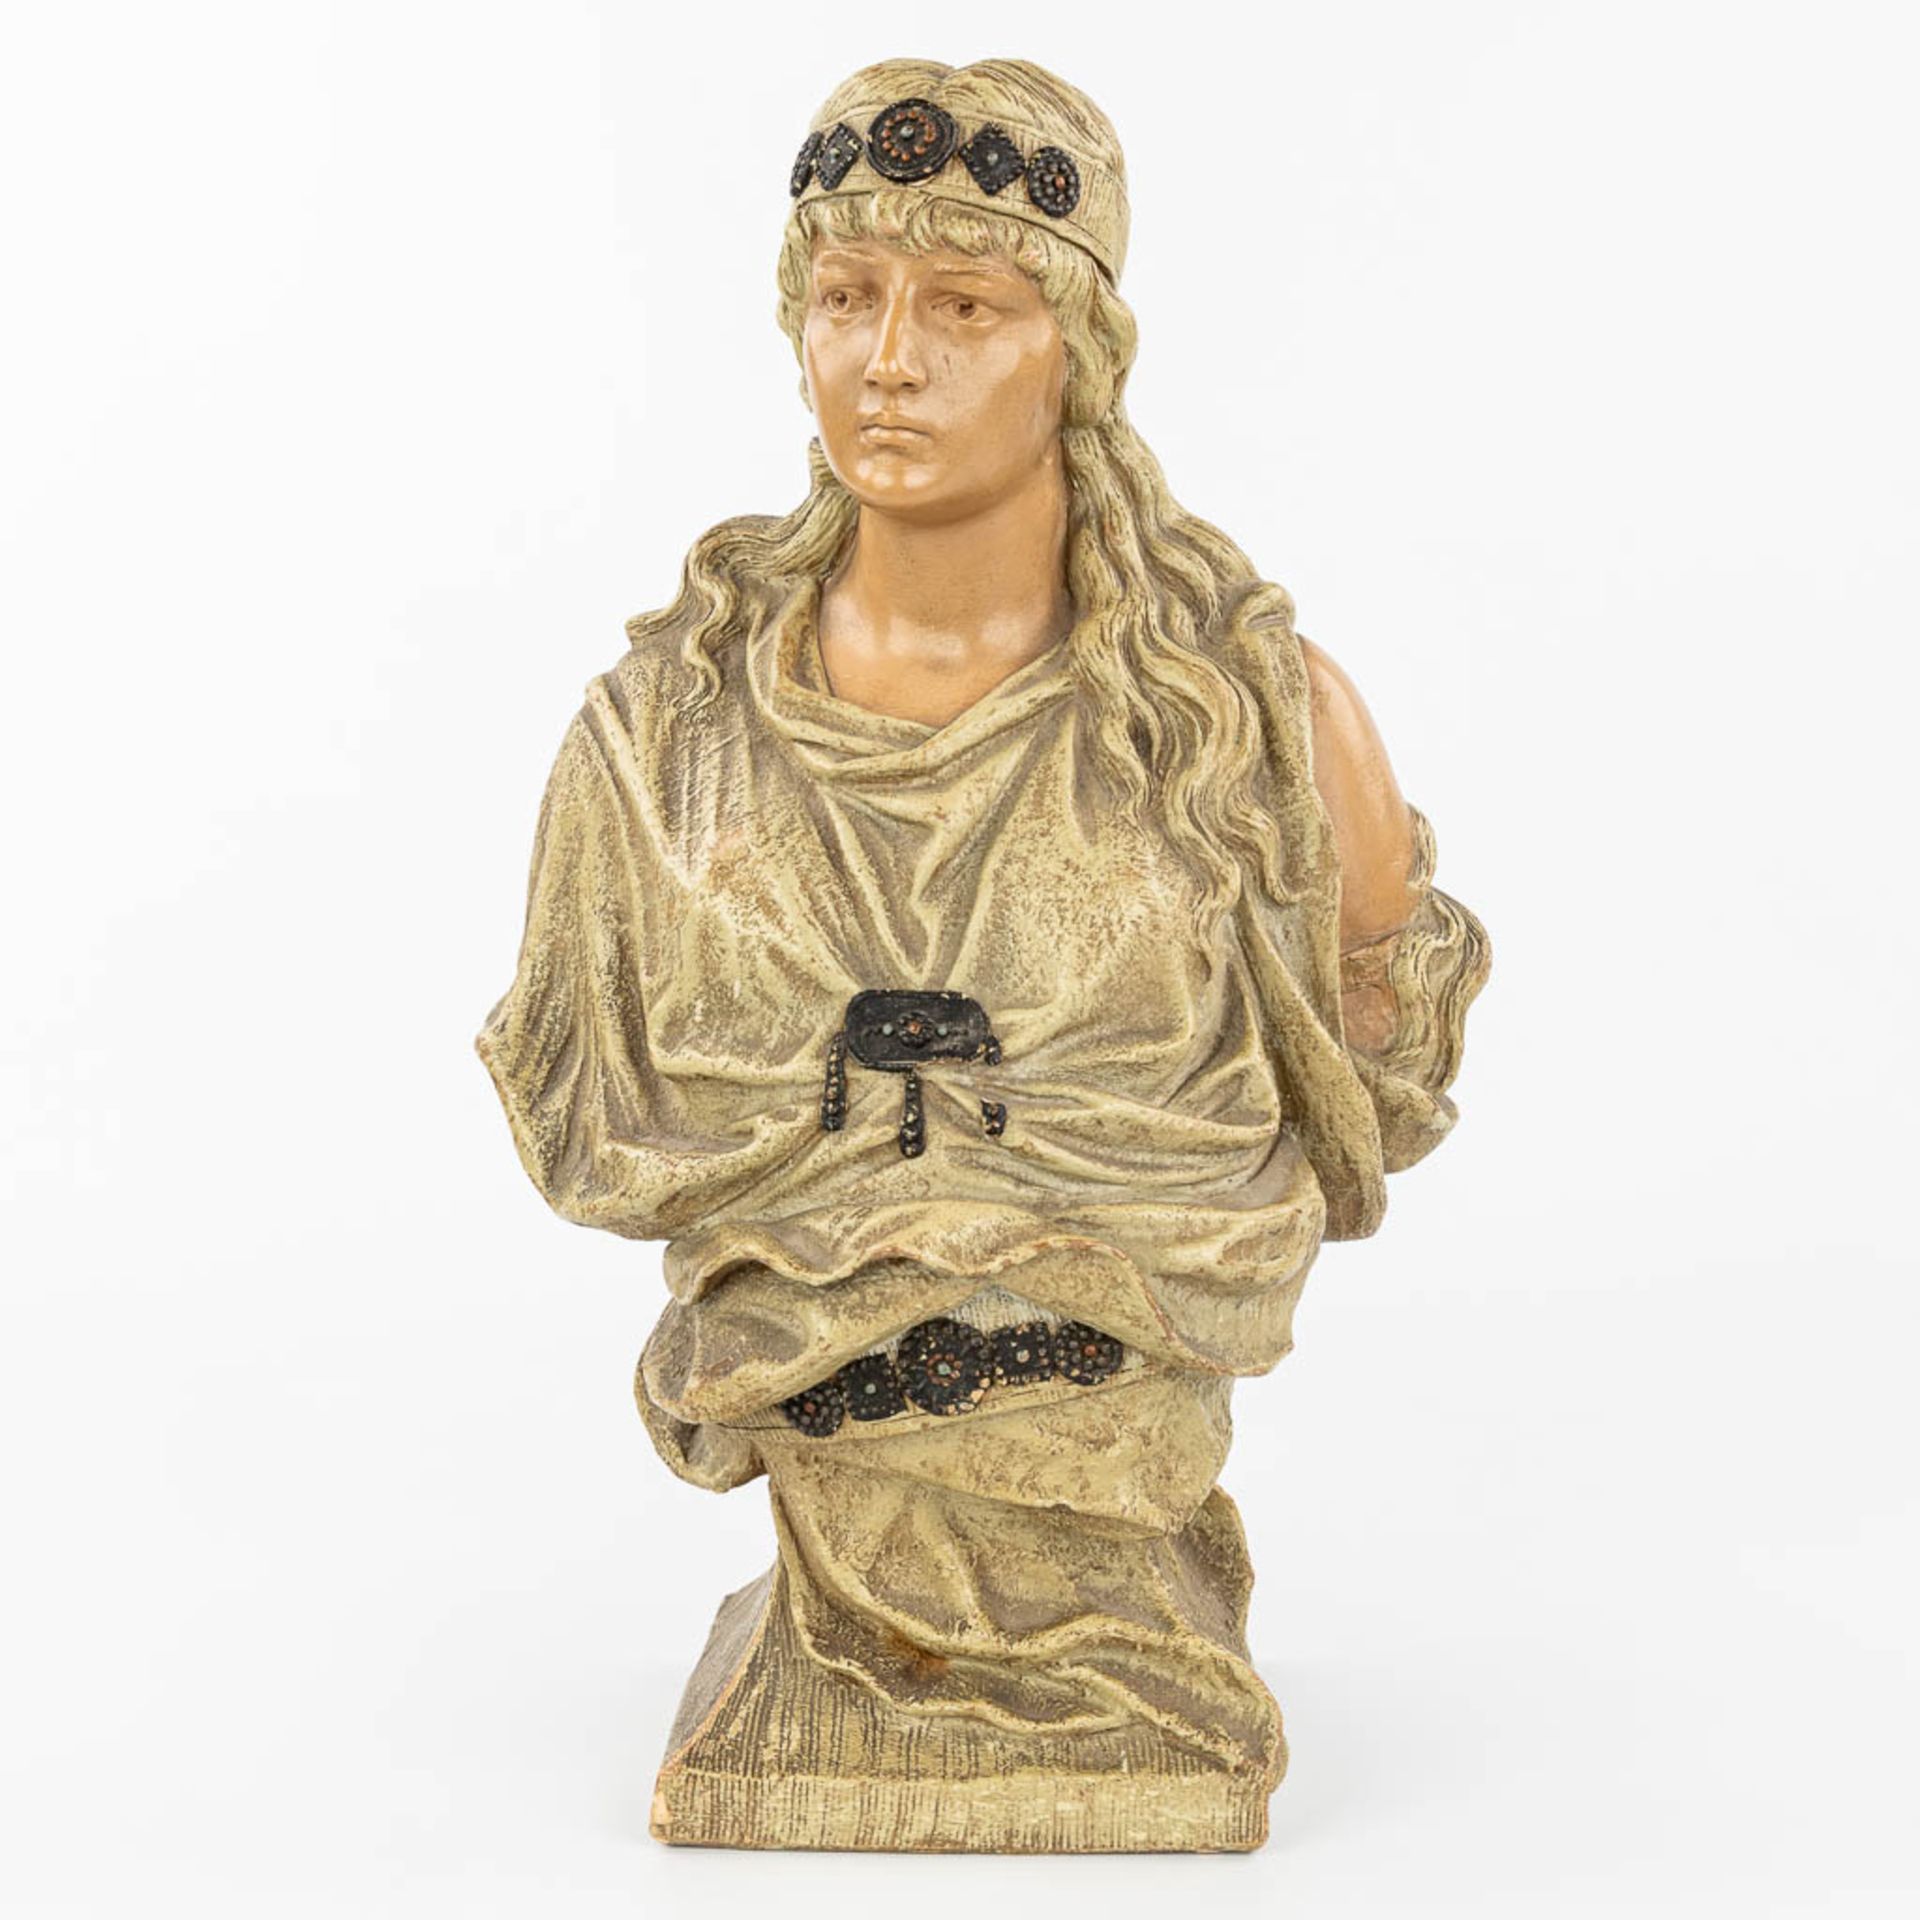 E. TELL (XIX-XX) and Friedrich GOLDSCHEIDER (1845-1897) 'Judith' a buste made of terracotta, for Gol